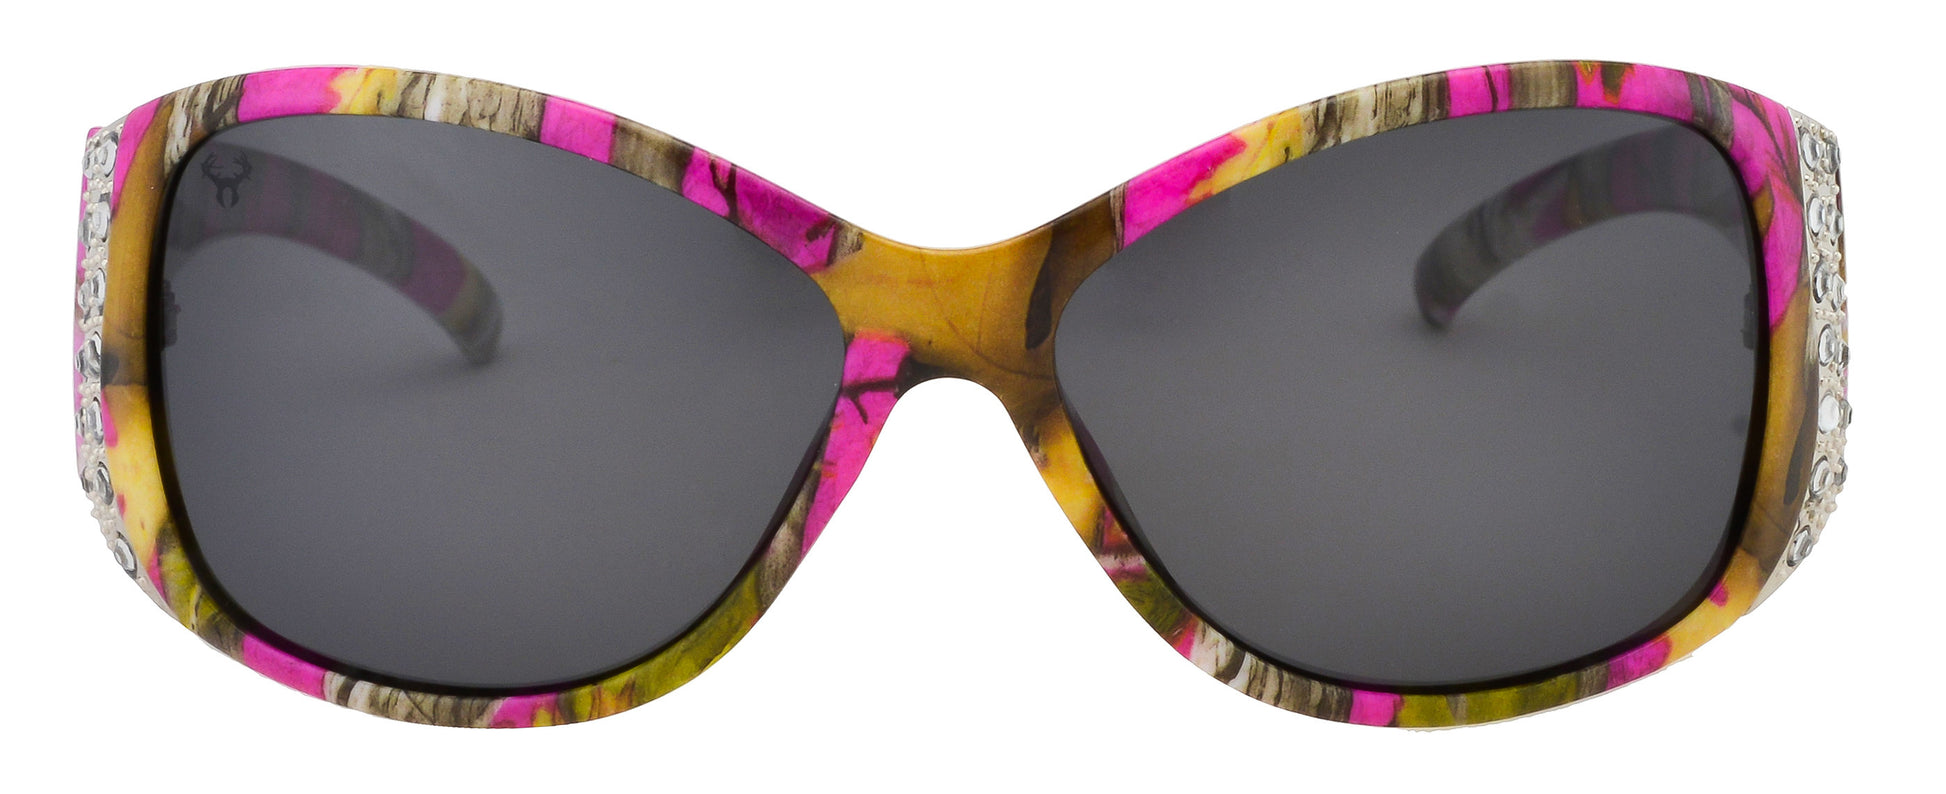 Third image: Hornz Hot Pink Camo Polarized Womens Sunglasses- Hot Pink Camo Frame- Smoke Lens